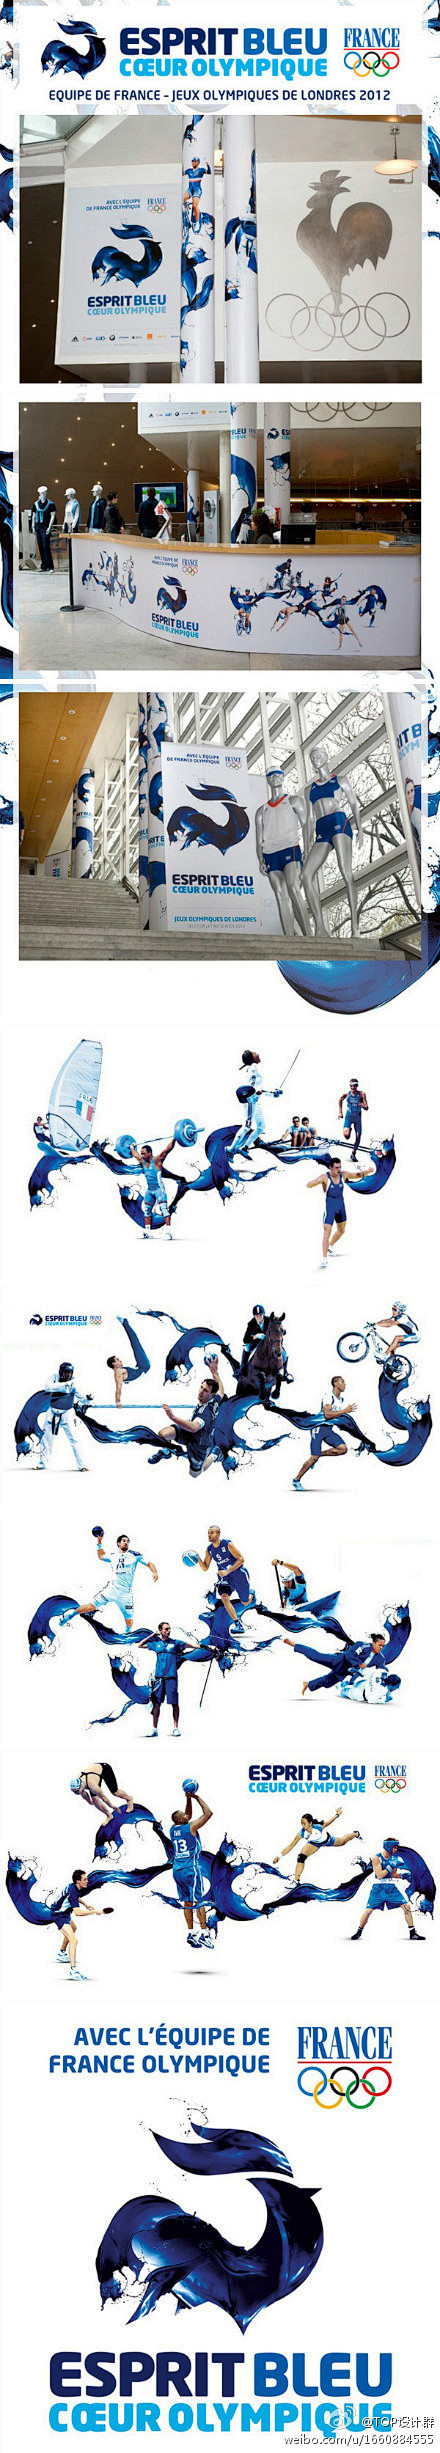 2012伦敦奥运会法国奥运代表队Logo...